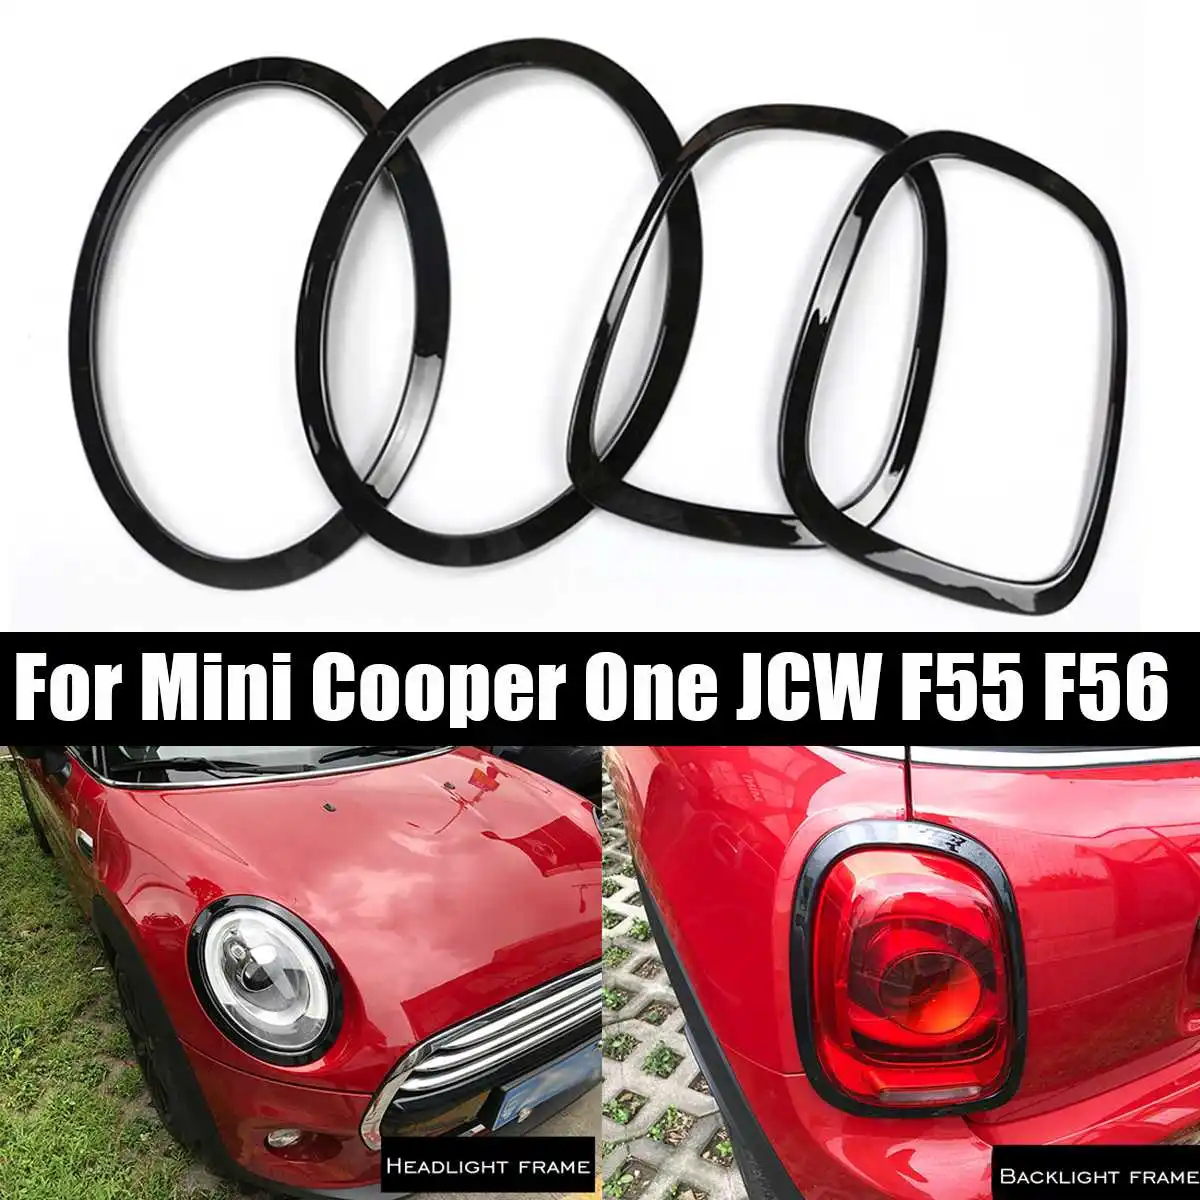 NO LOGO FJJ-DZS Covers 4 Pezzi Faro dellautomobile Testa Coda Posteriore lampade Rim Trim Ring for Mini Cooper JCW Un F55 F56 Accessori Auto-Styling 